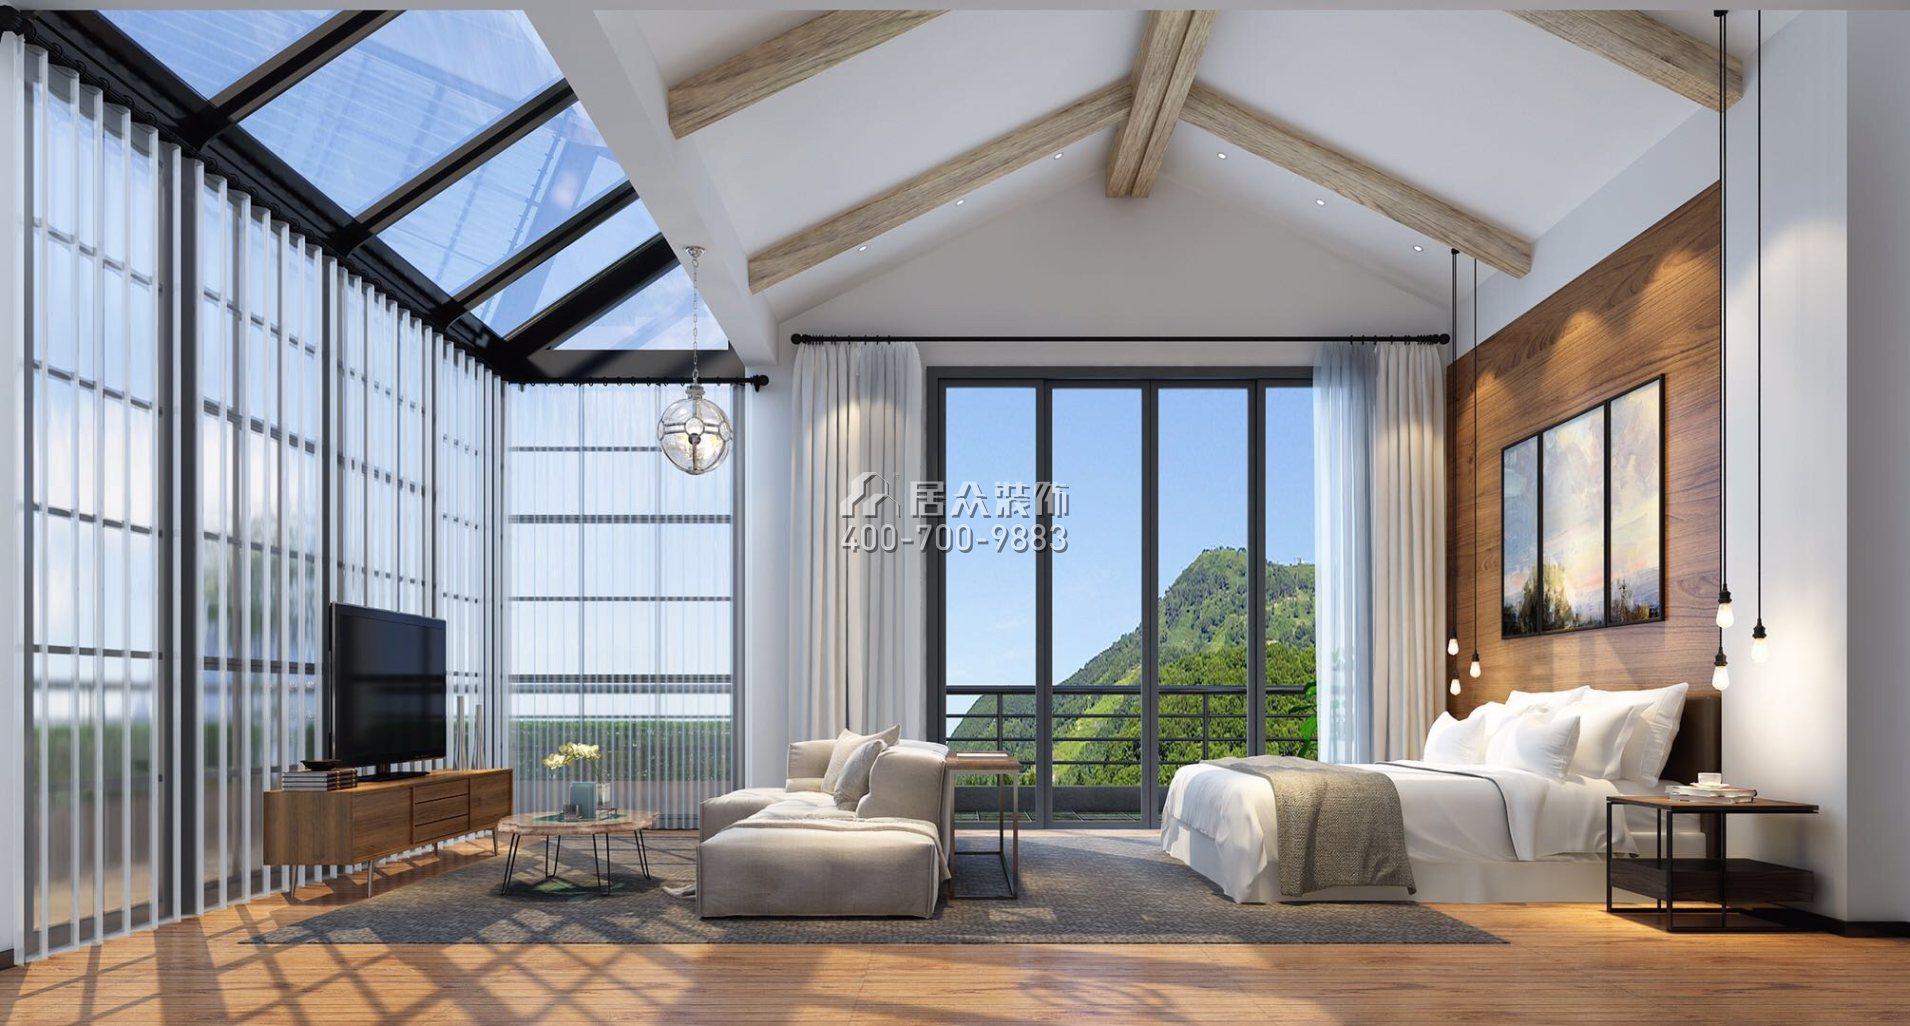 海逸豪庭御翠湖畔700平方米美式風格別墅戶型臥室裝修效果圖